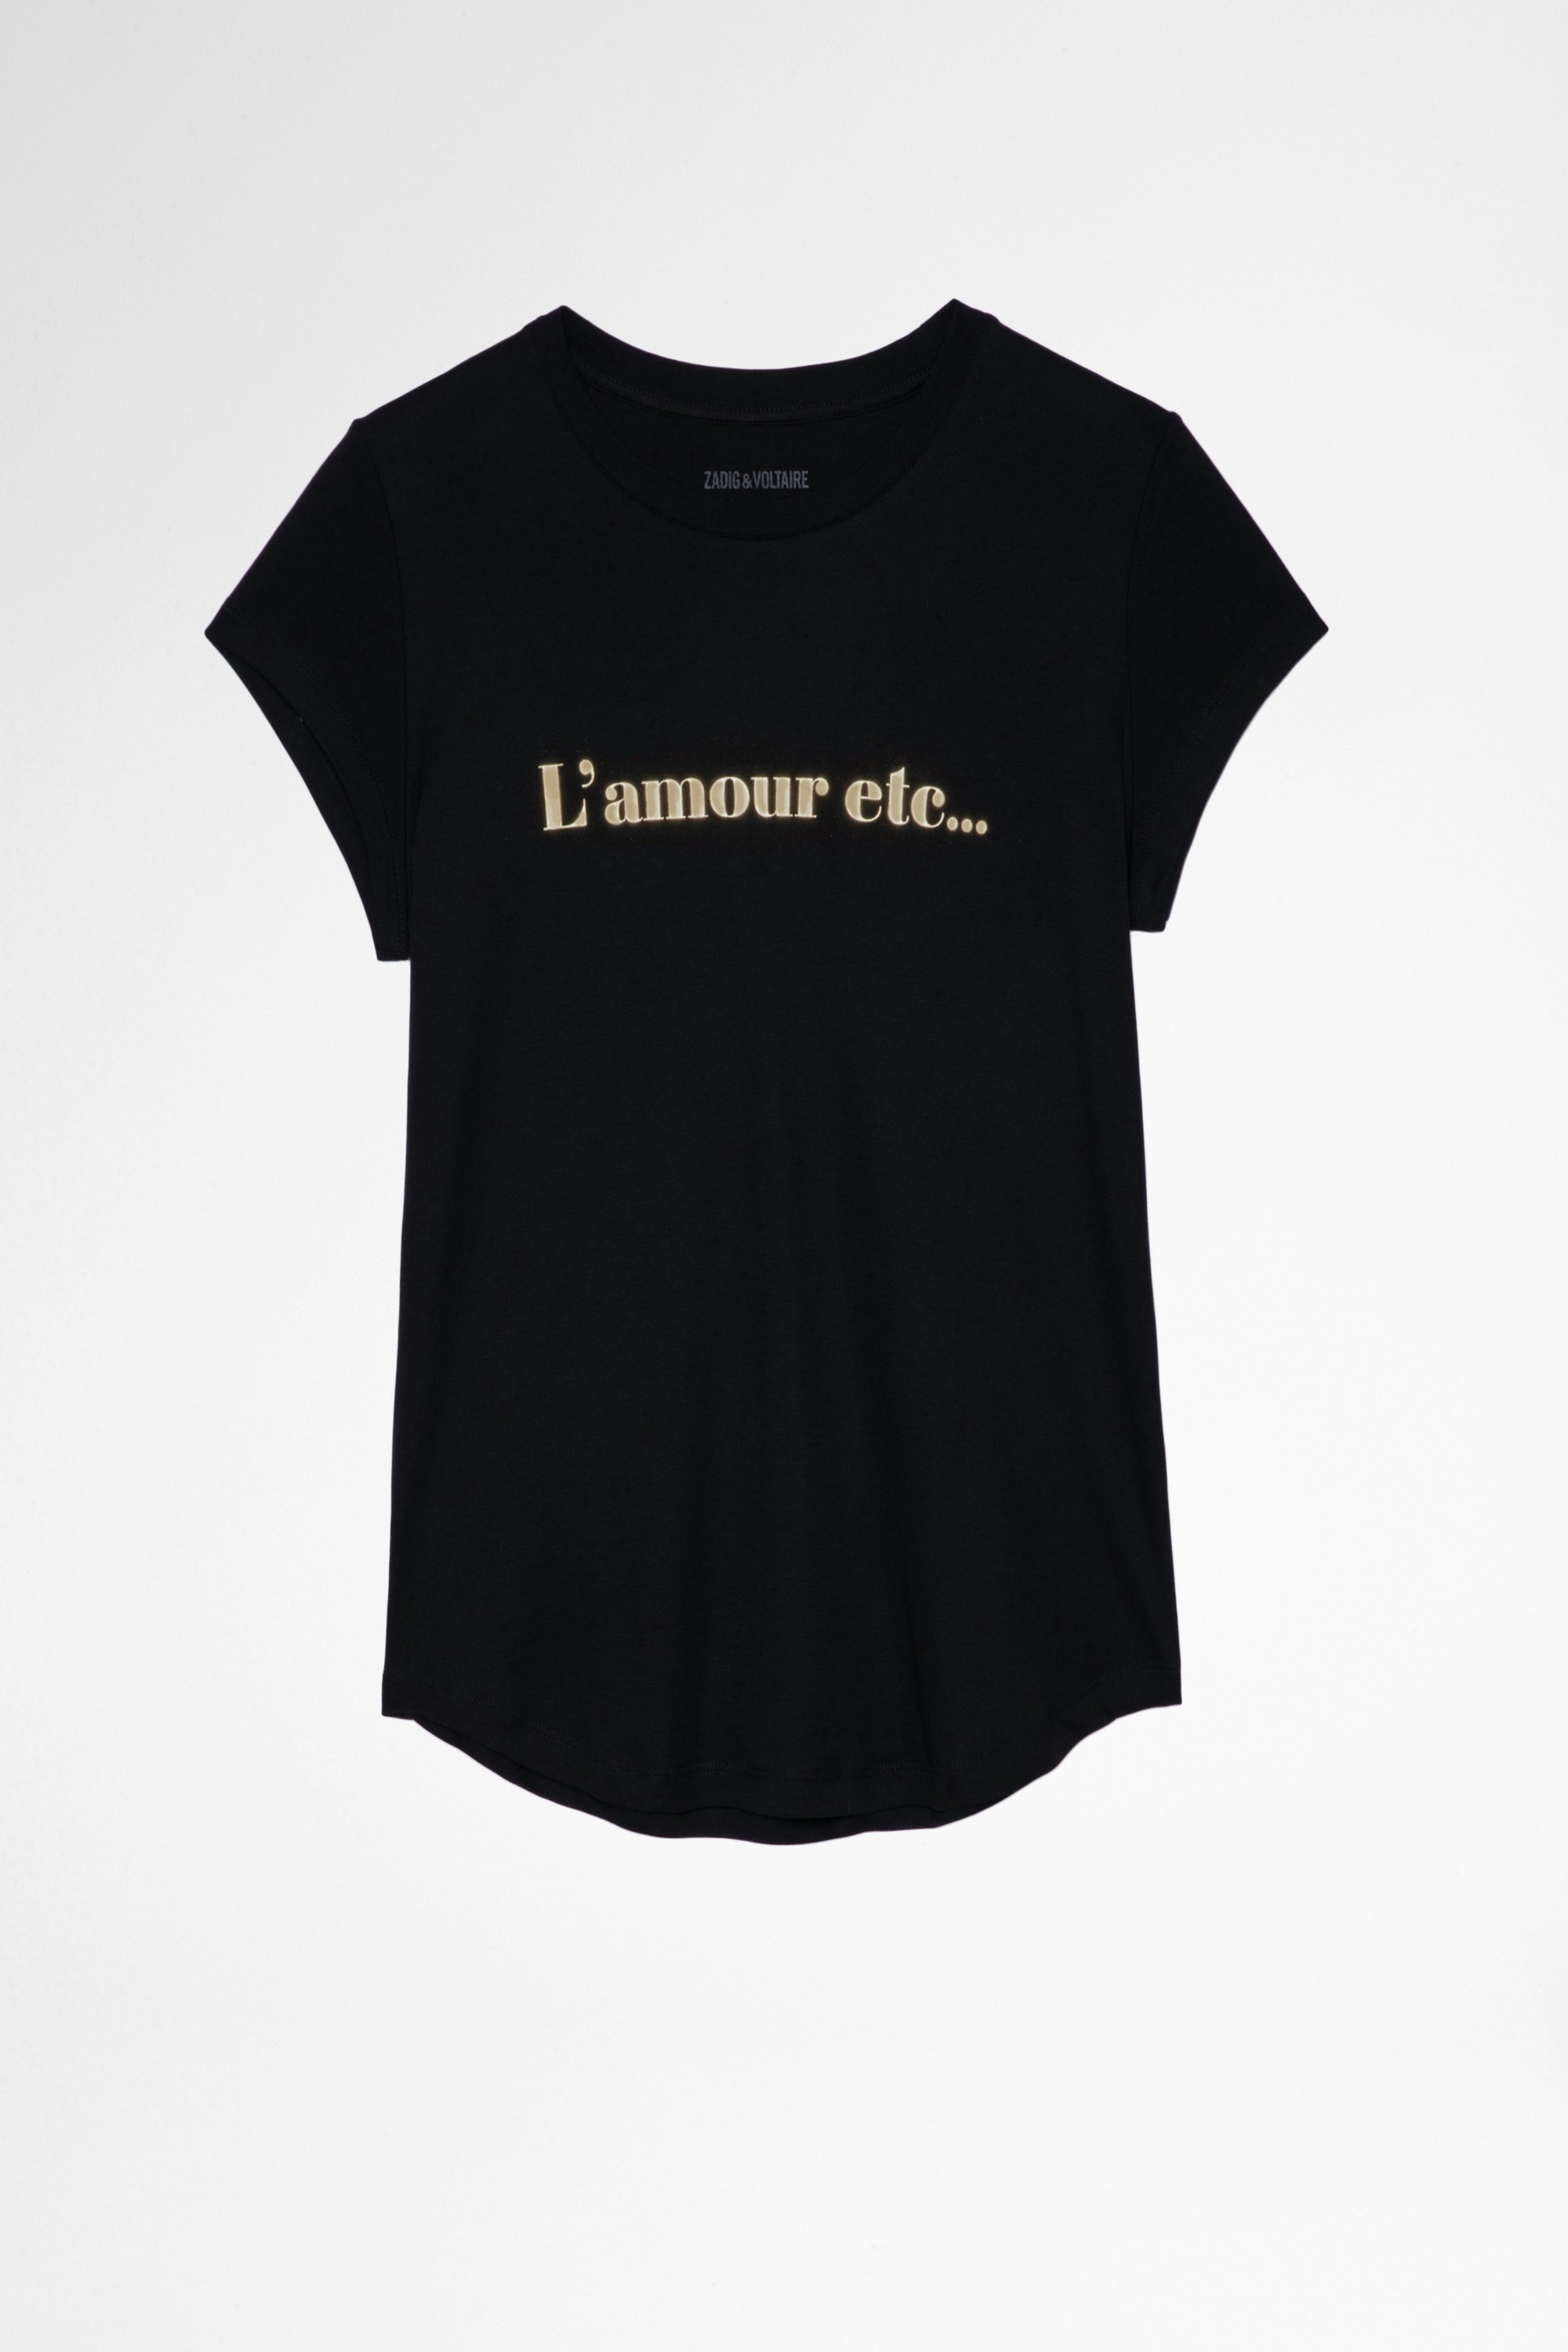 Camiseta Woop L'amour etc Camiseta de mujer de algodón blanco con estampado Love. Confeccionado con fibras procedentes de la agricultura ecológica.